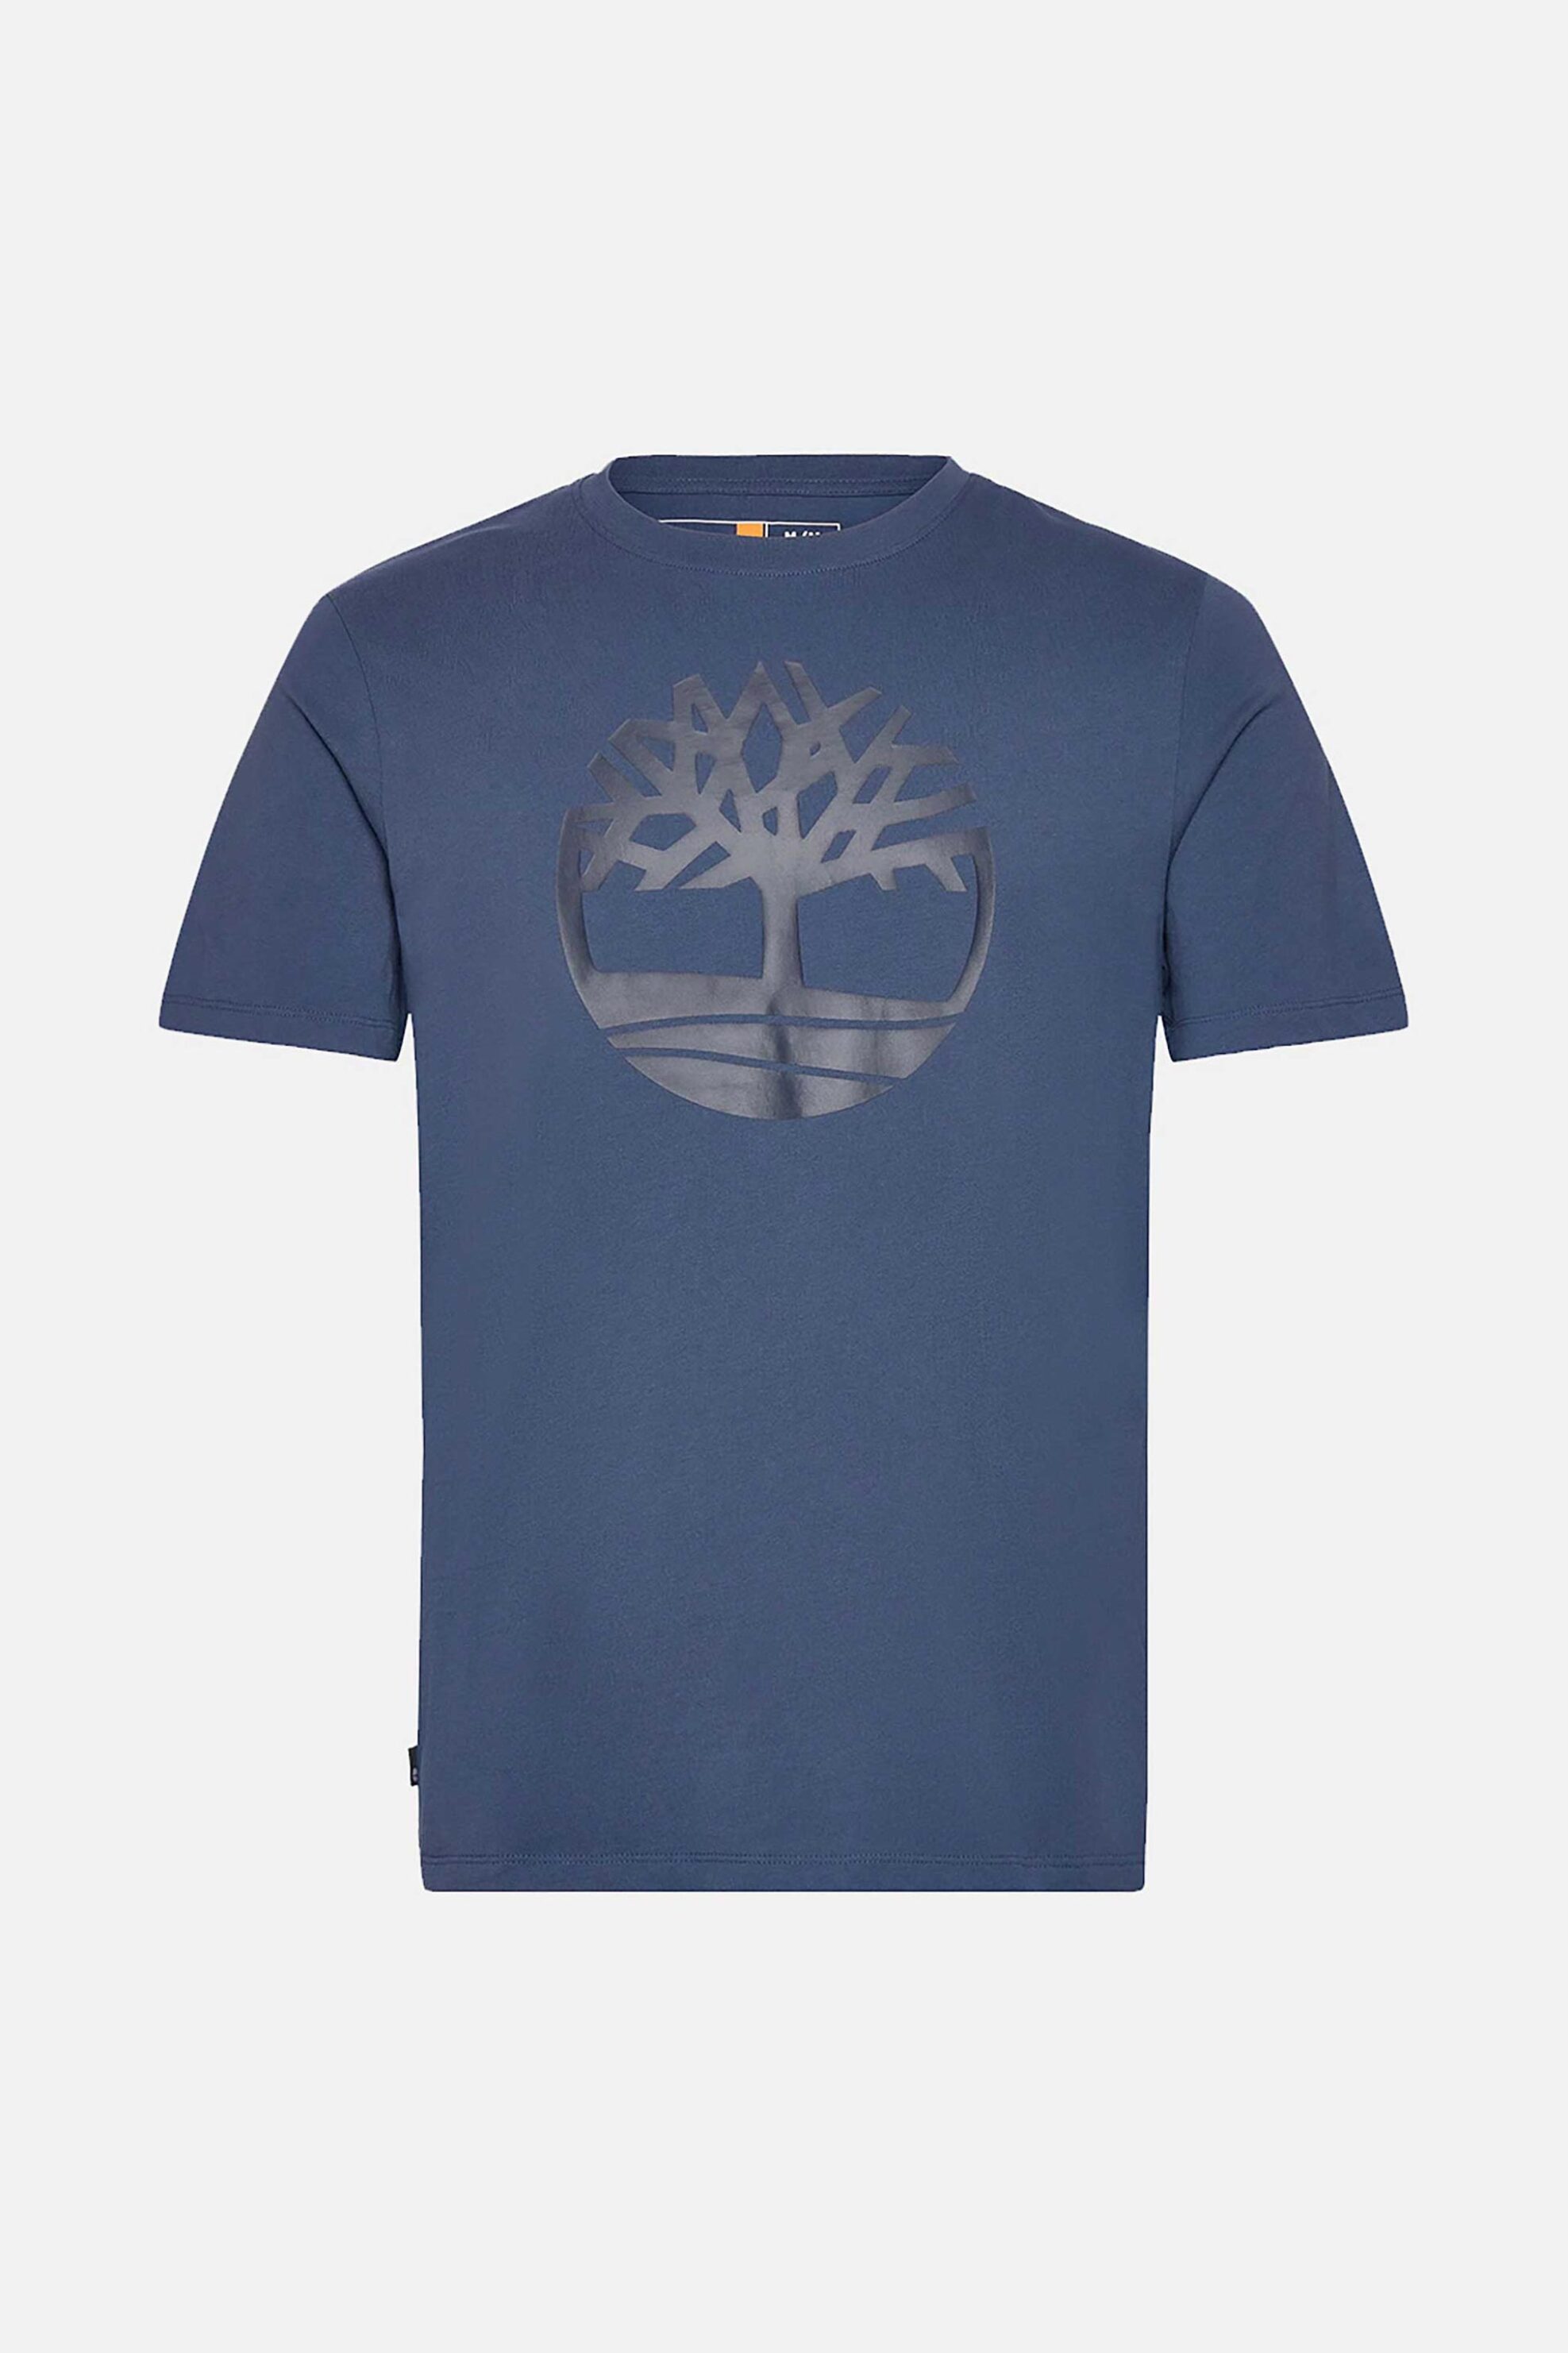 Ανδρική Μόδα > Ανδρικά Ρούχα > Ανδρικές Μπλούζες > Ανδρικά T-Shirts Timberland ανδρικό T-shirt με logo print Regular Fit "Kennebec River" - TB0A2C2RS741 Μπλε